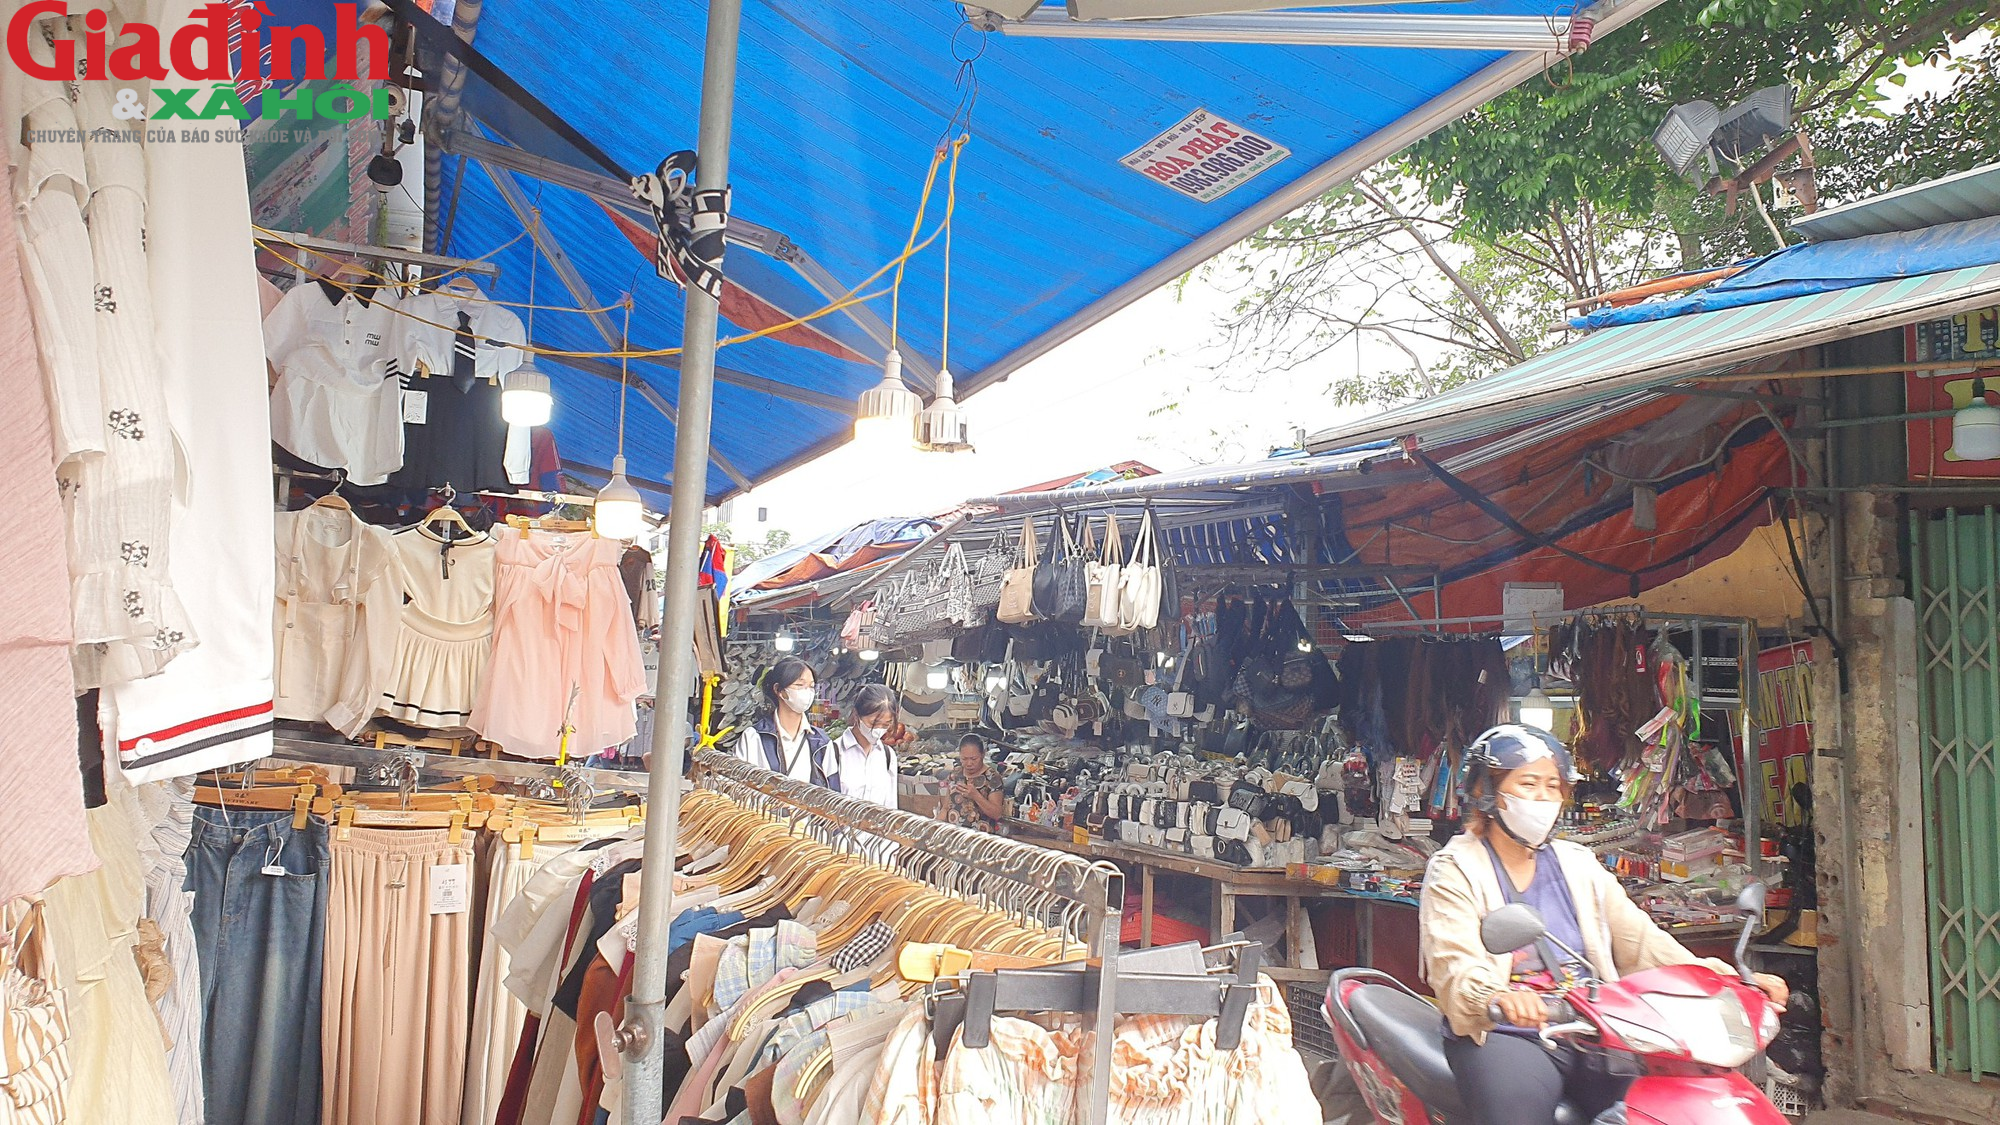 Hà Nội: Đường Phan Văn Trường đang bị chiếm dụng bởi ‘thiên đường mua sắm’ giới trẻ  - Ảnh 9.